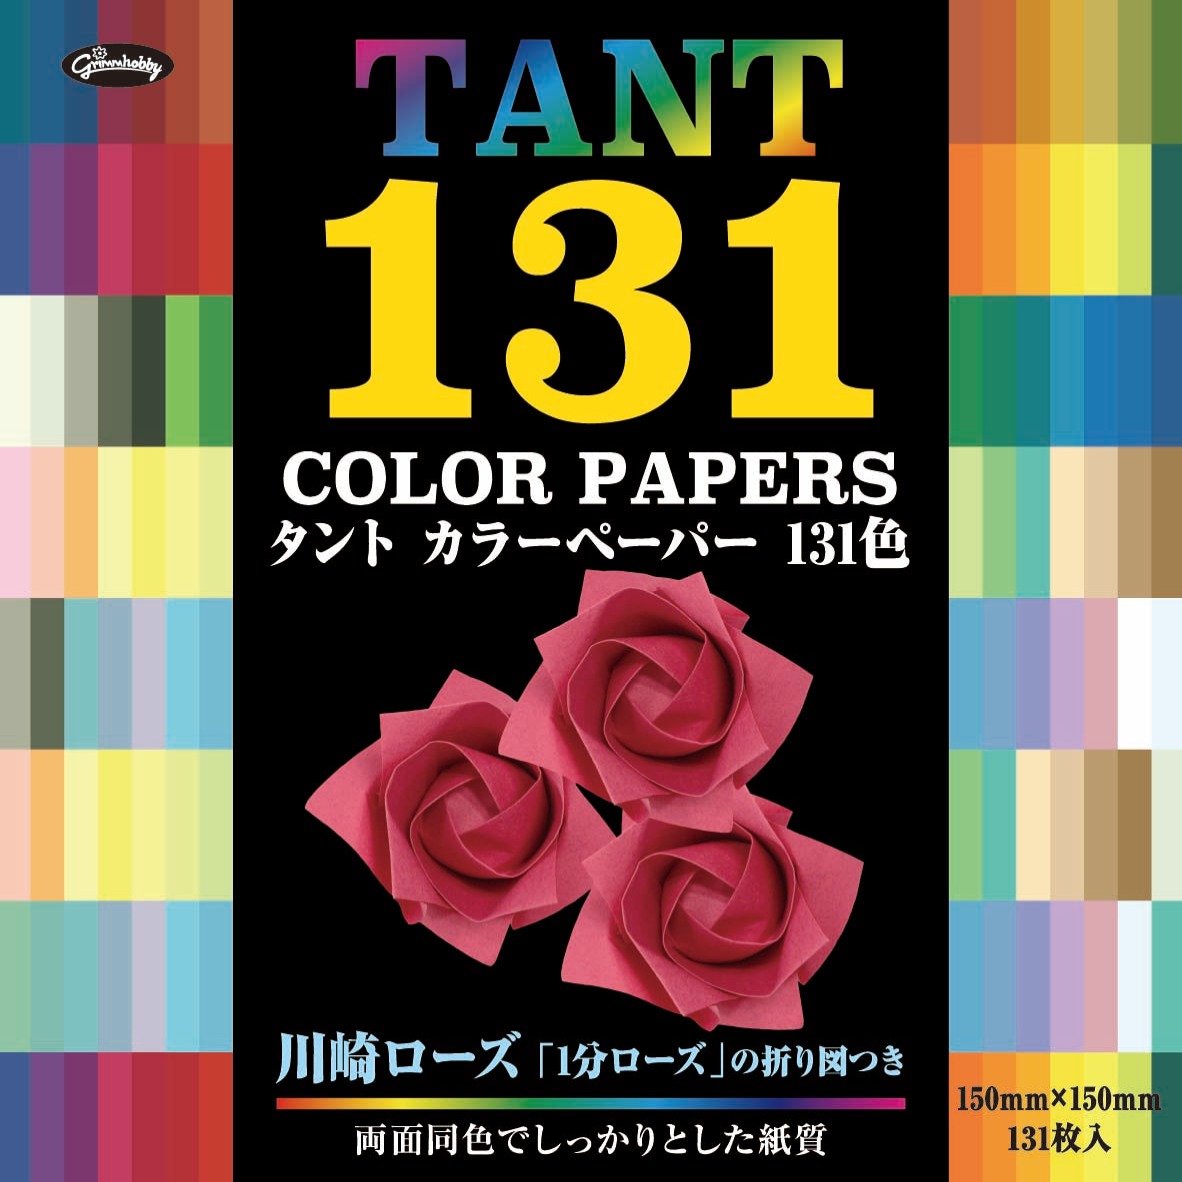 15.0) タント 131色 – TOKYO ORIGAMI MUSEUM SHOP